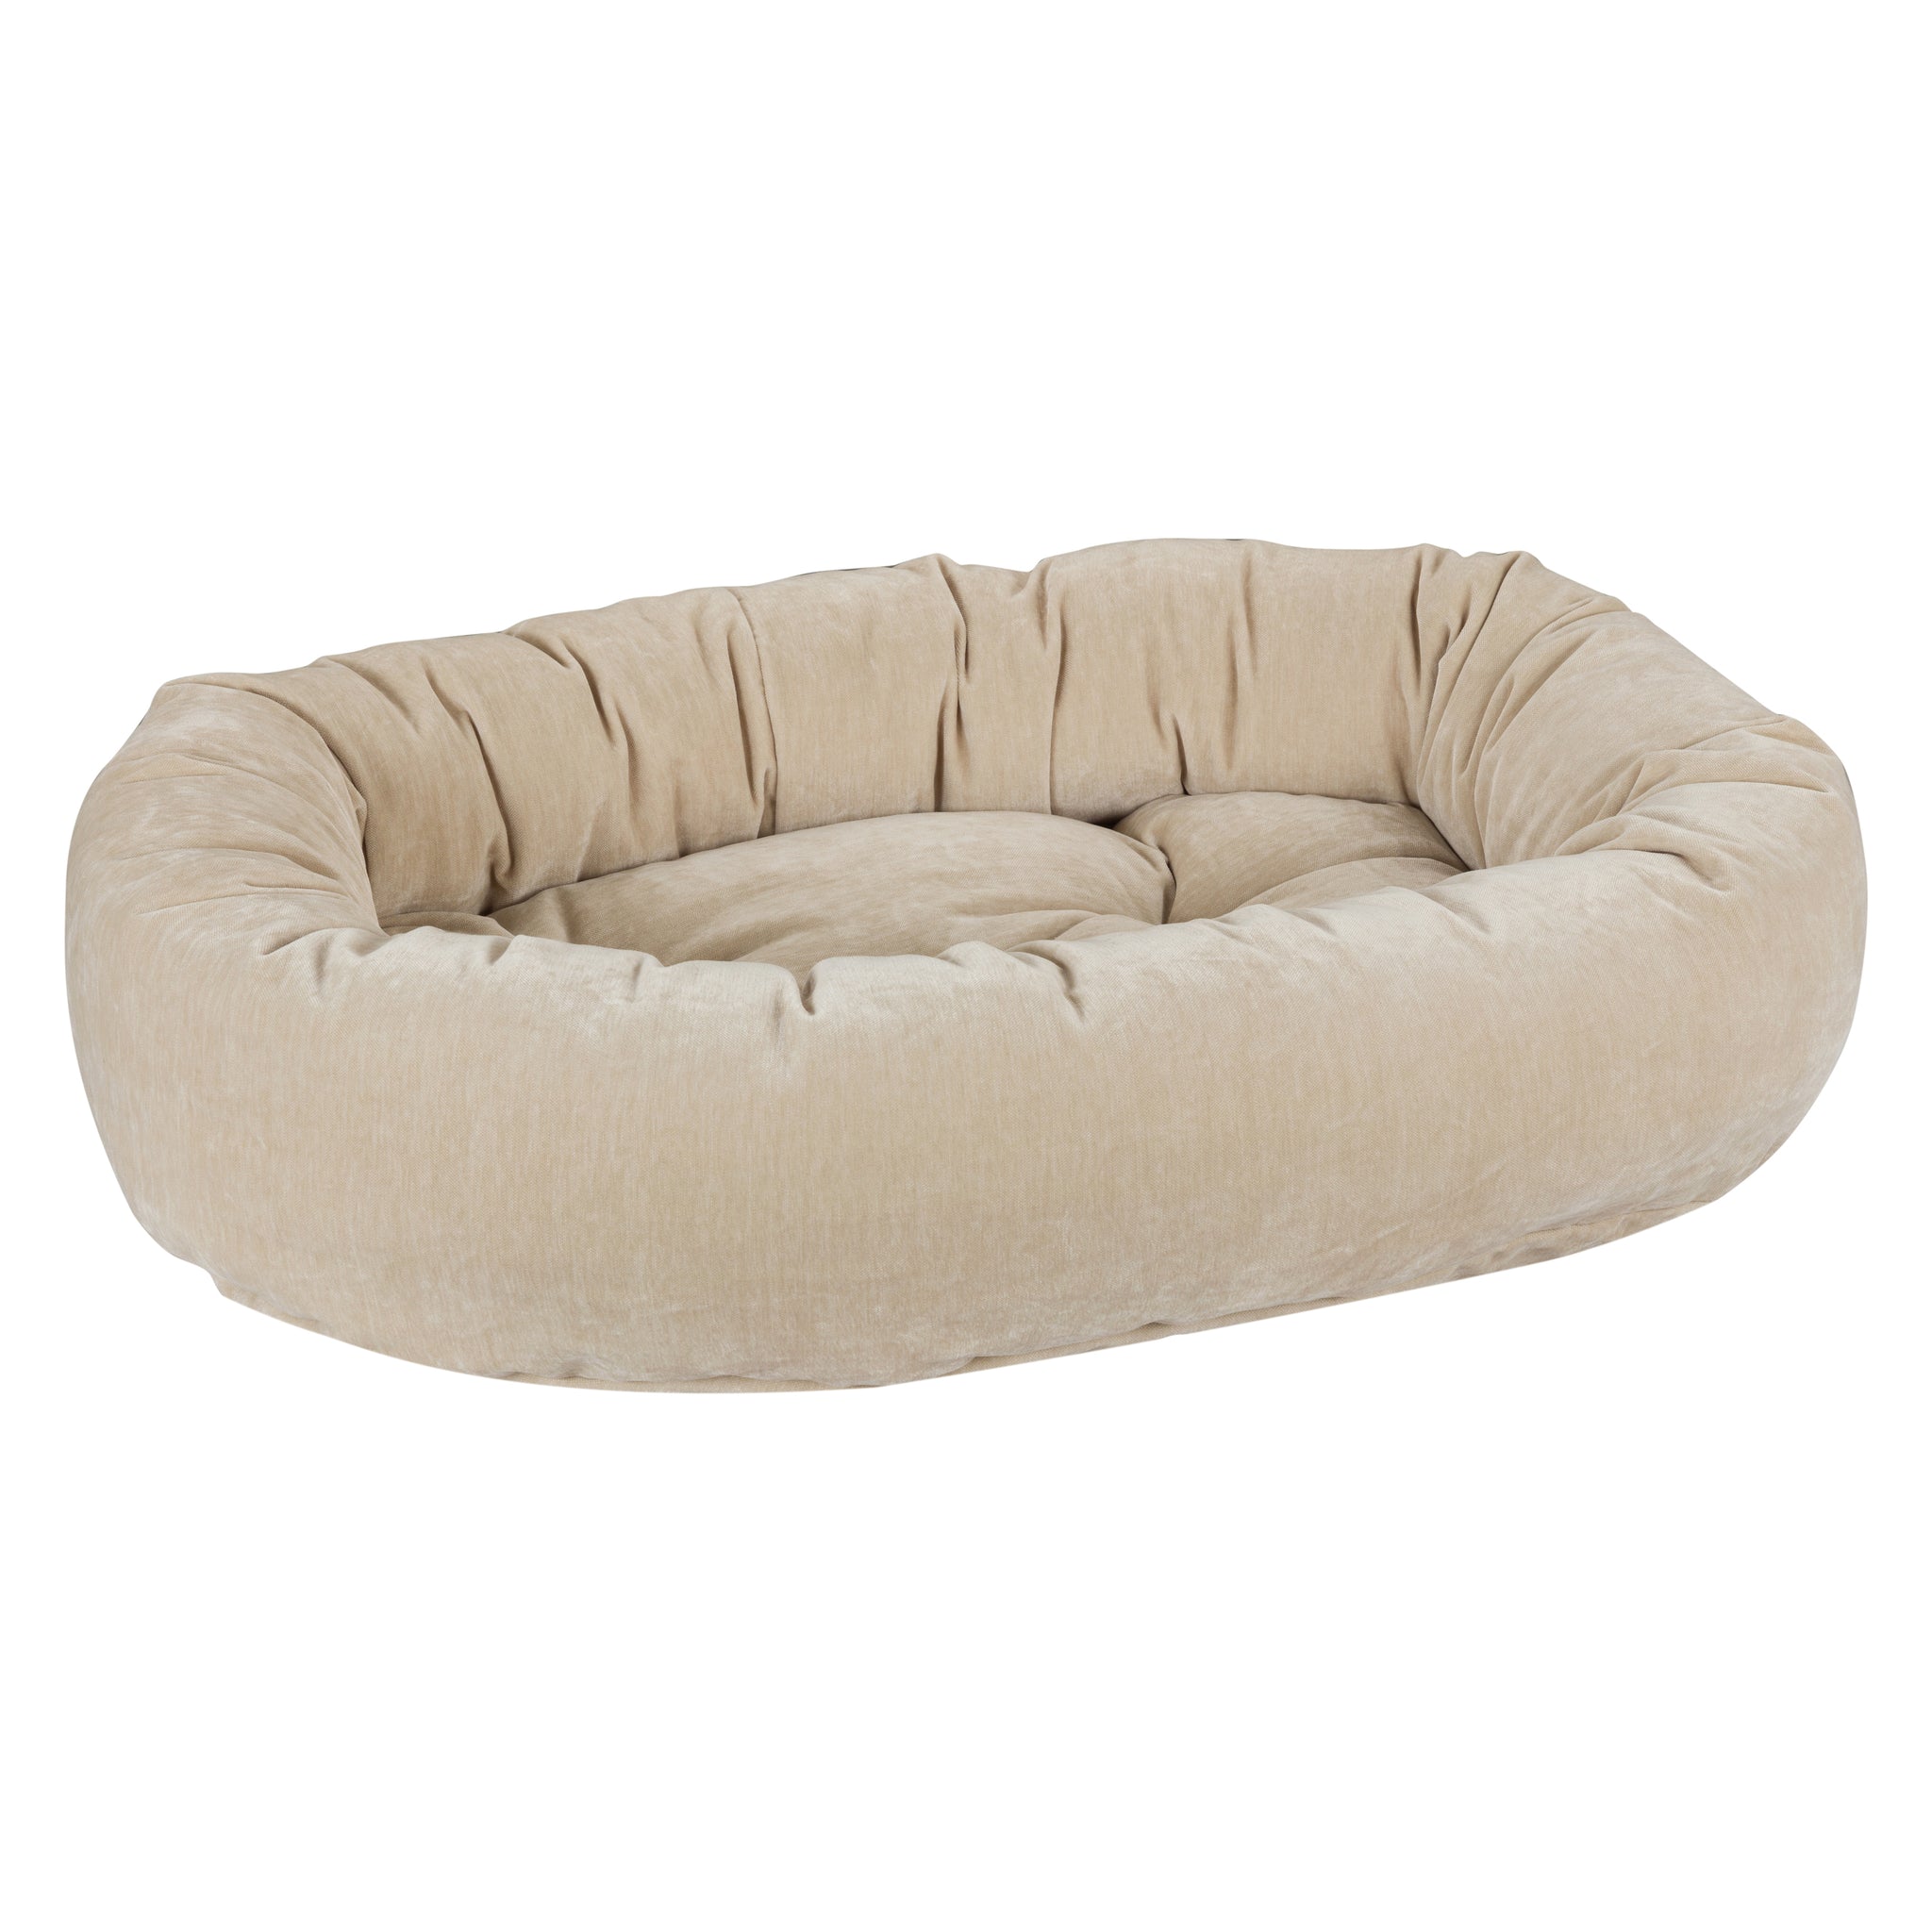 Microvelvet - Donut Bed - Linen - Dog Bed